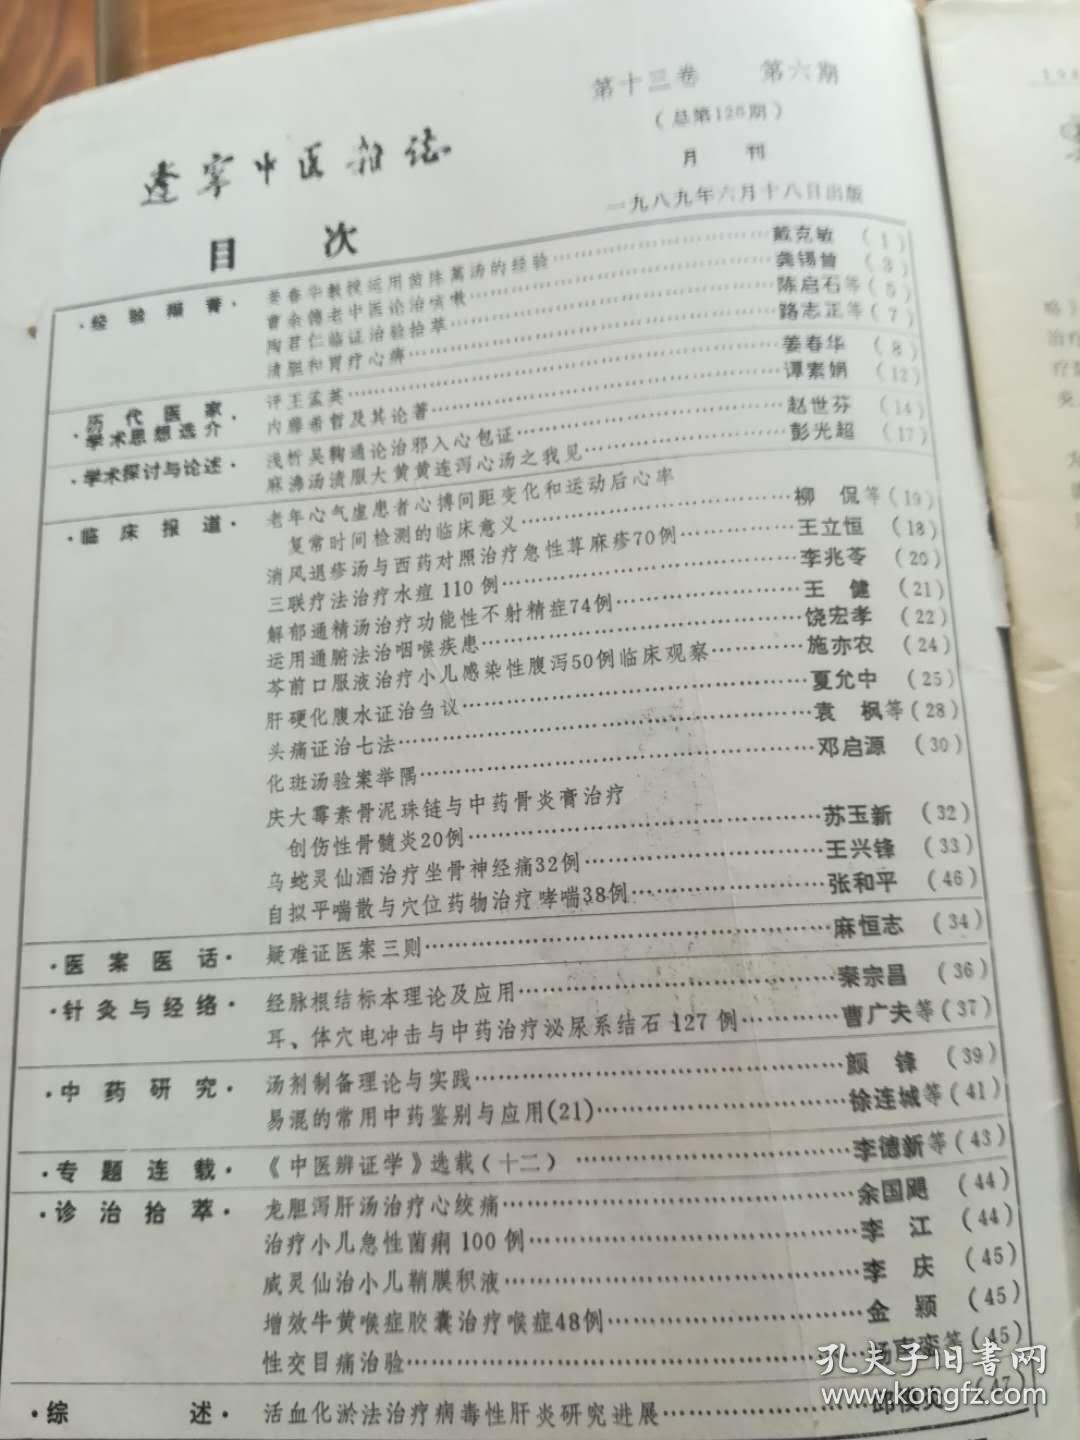 辽宁中医杂志1989年1、2、3、4、5、6、7、8、9、10、11、12期全年1-12期全